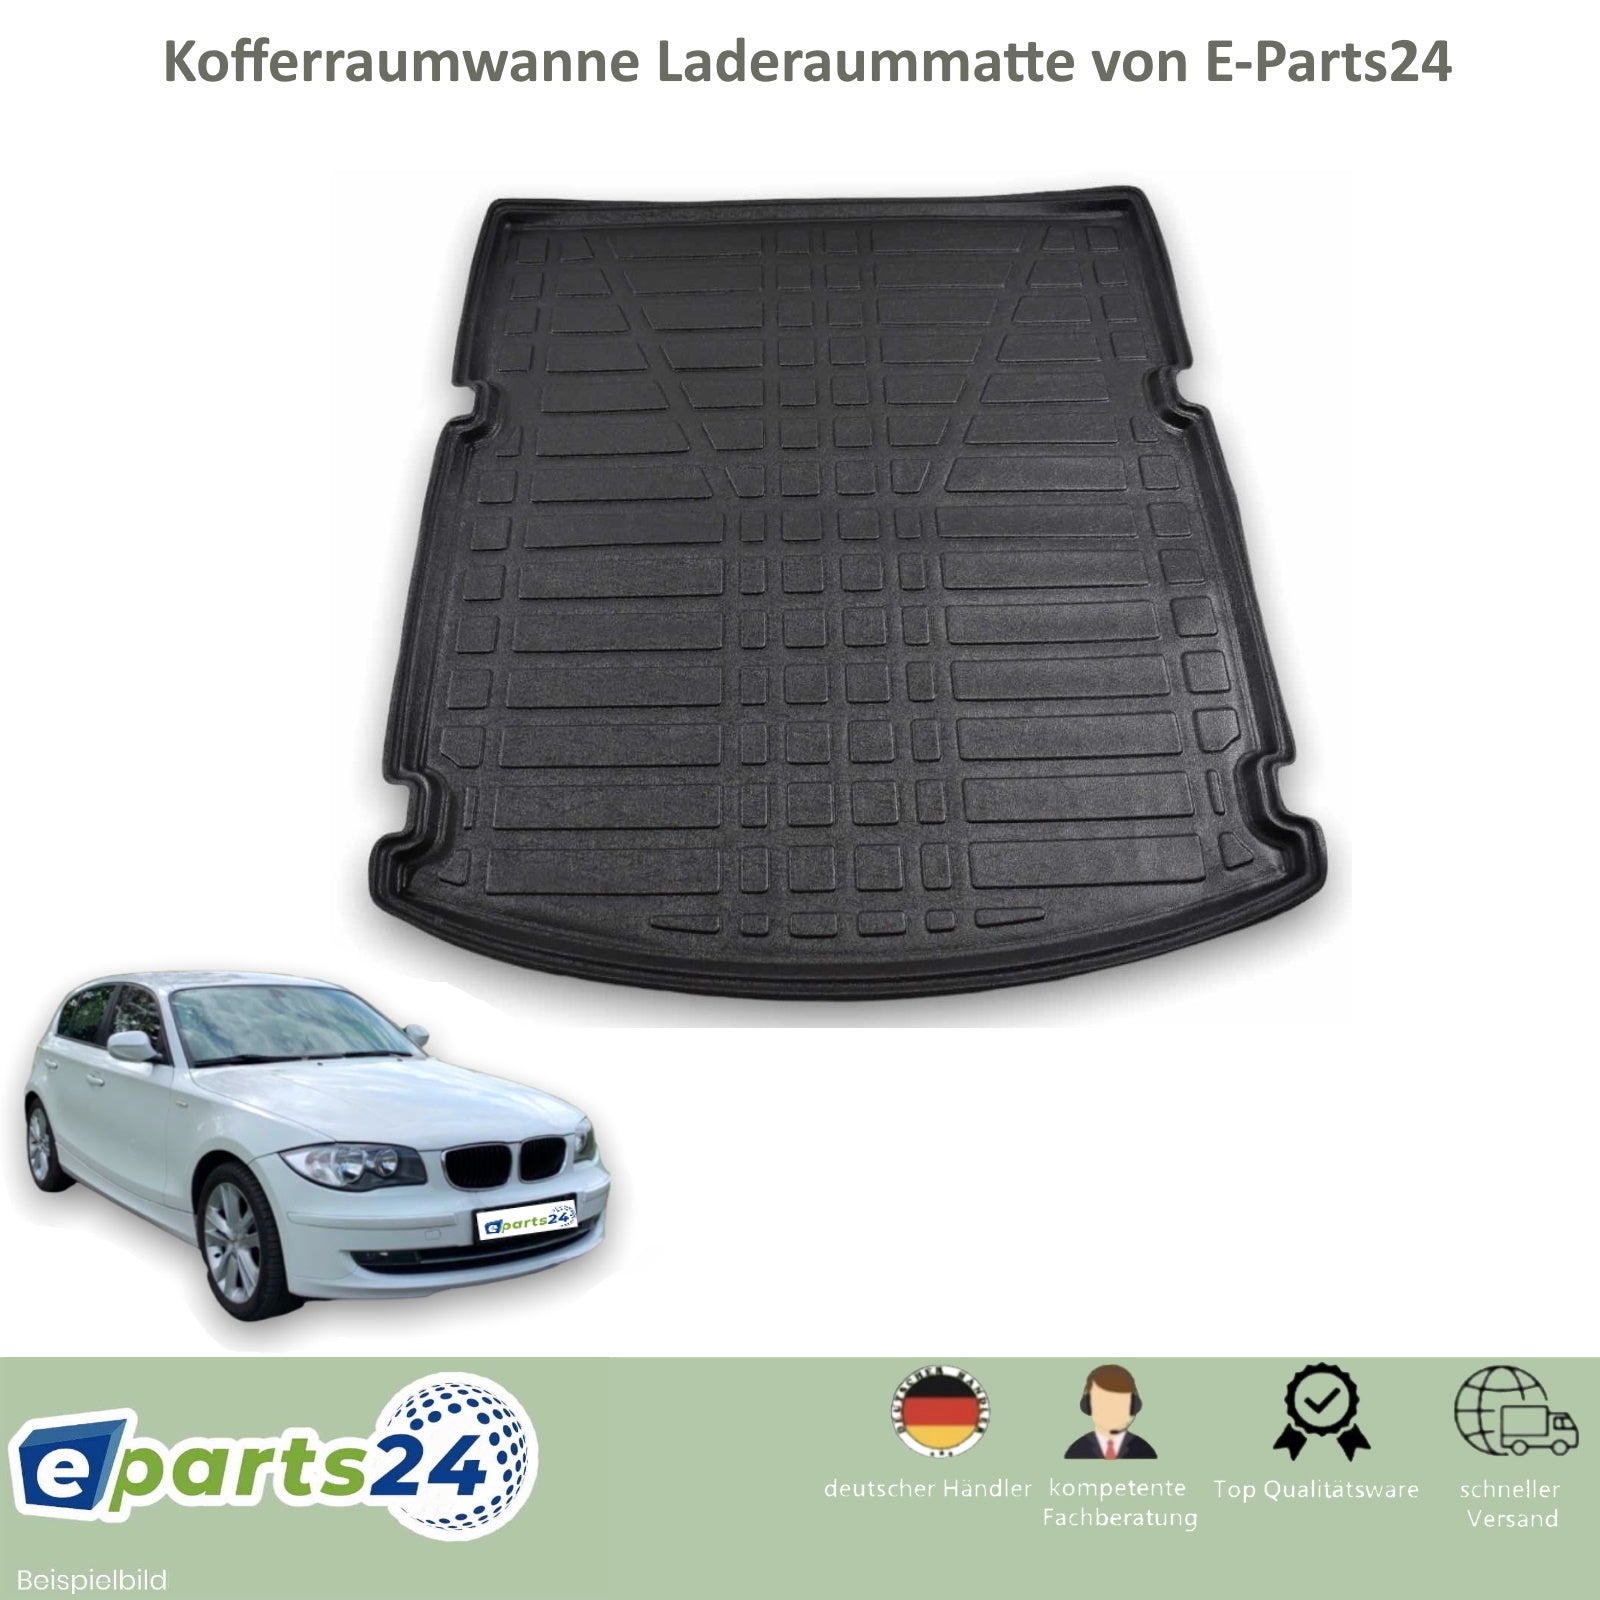 Gummi Kofferraumwanne Kofferraummatte Laderaumwanne für BMW 20 E87 1er E-Parts24 –